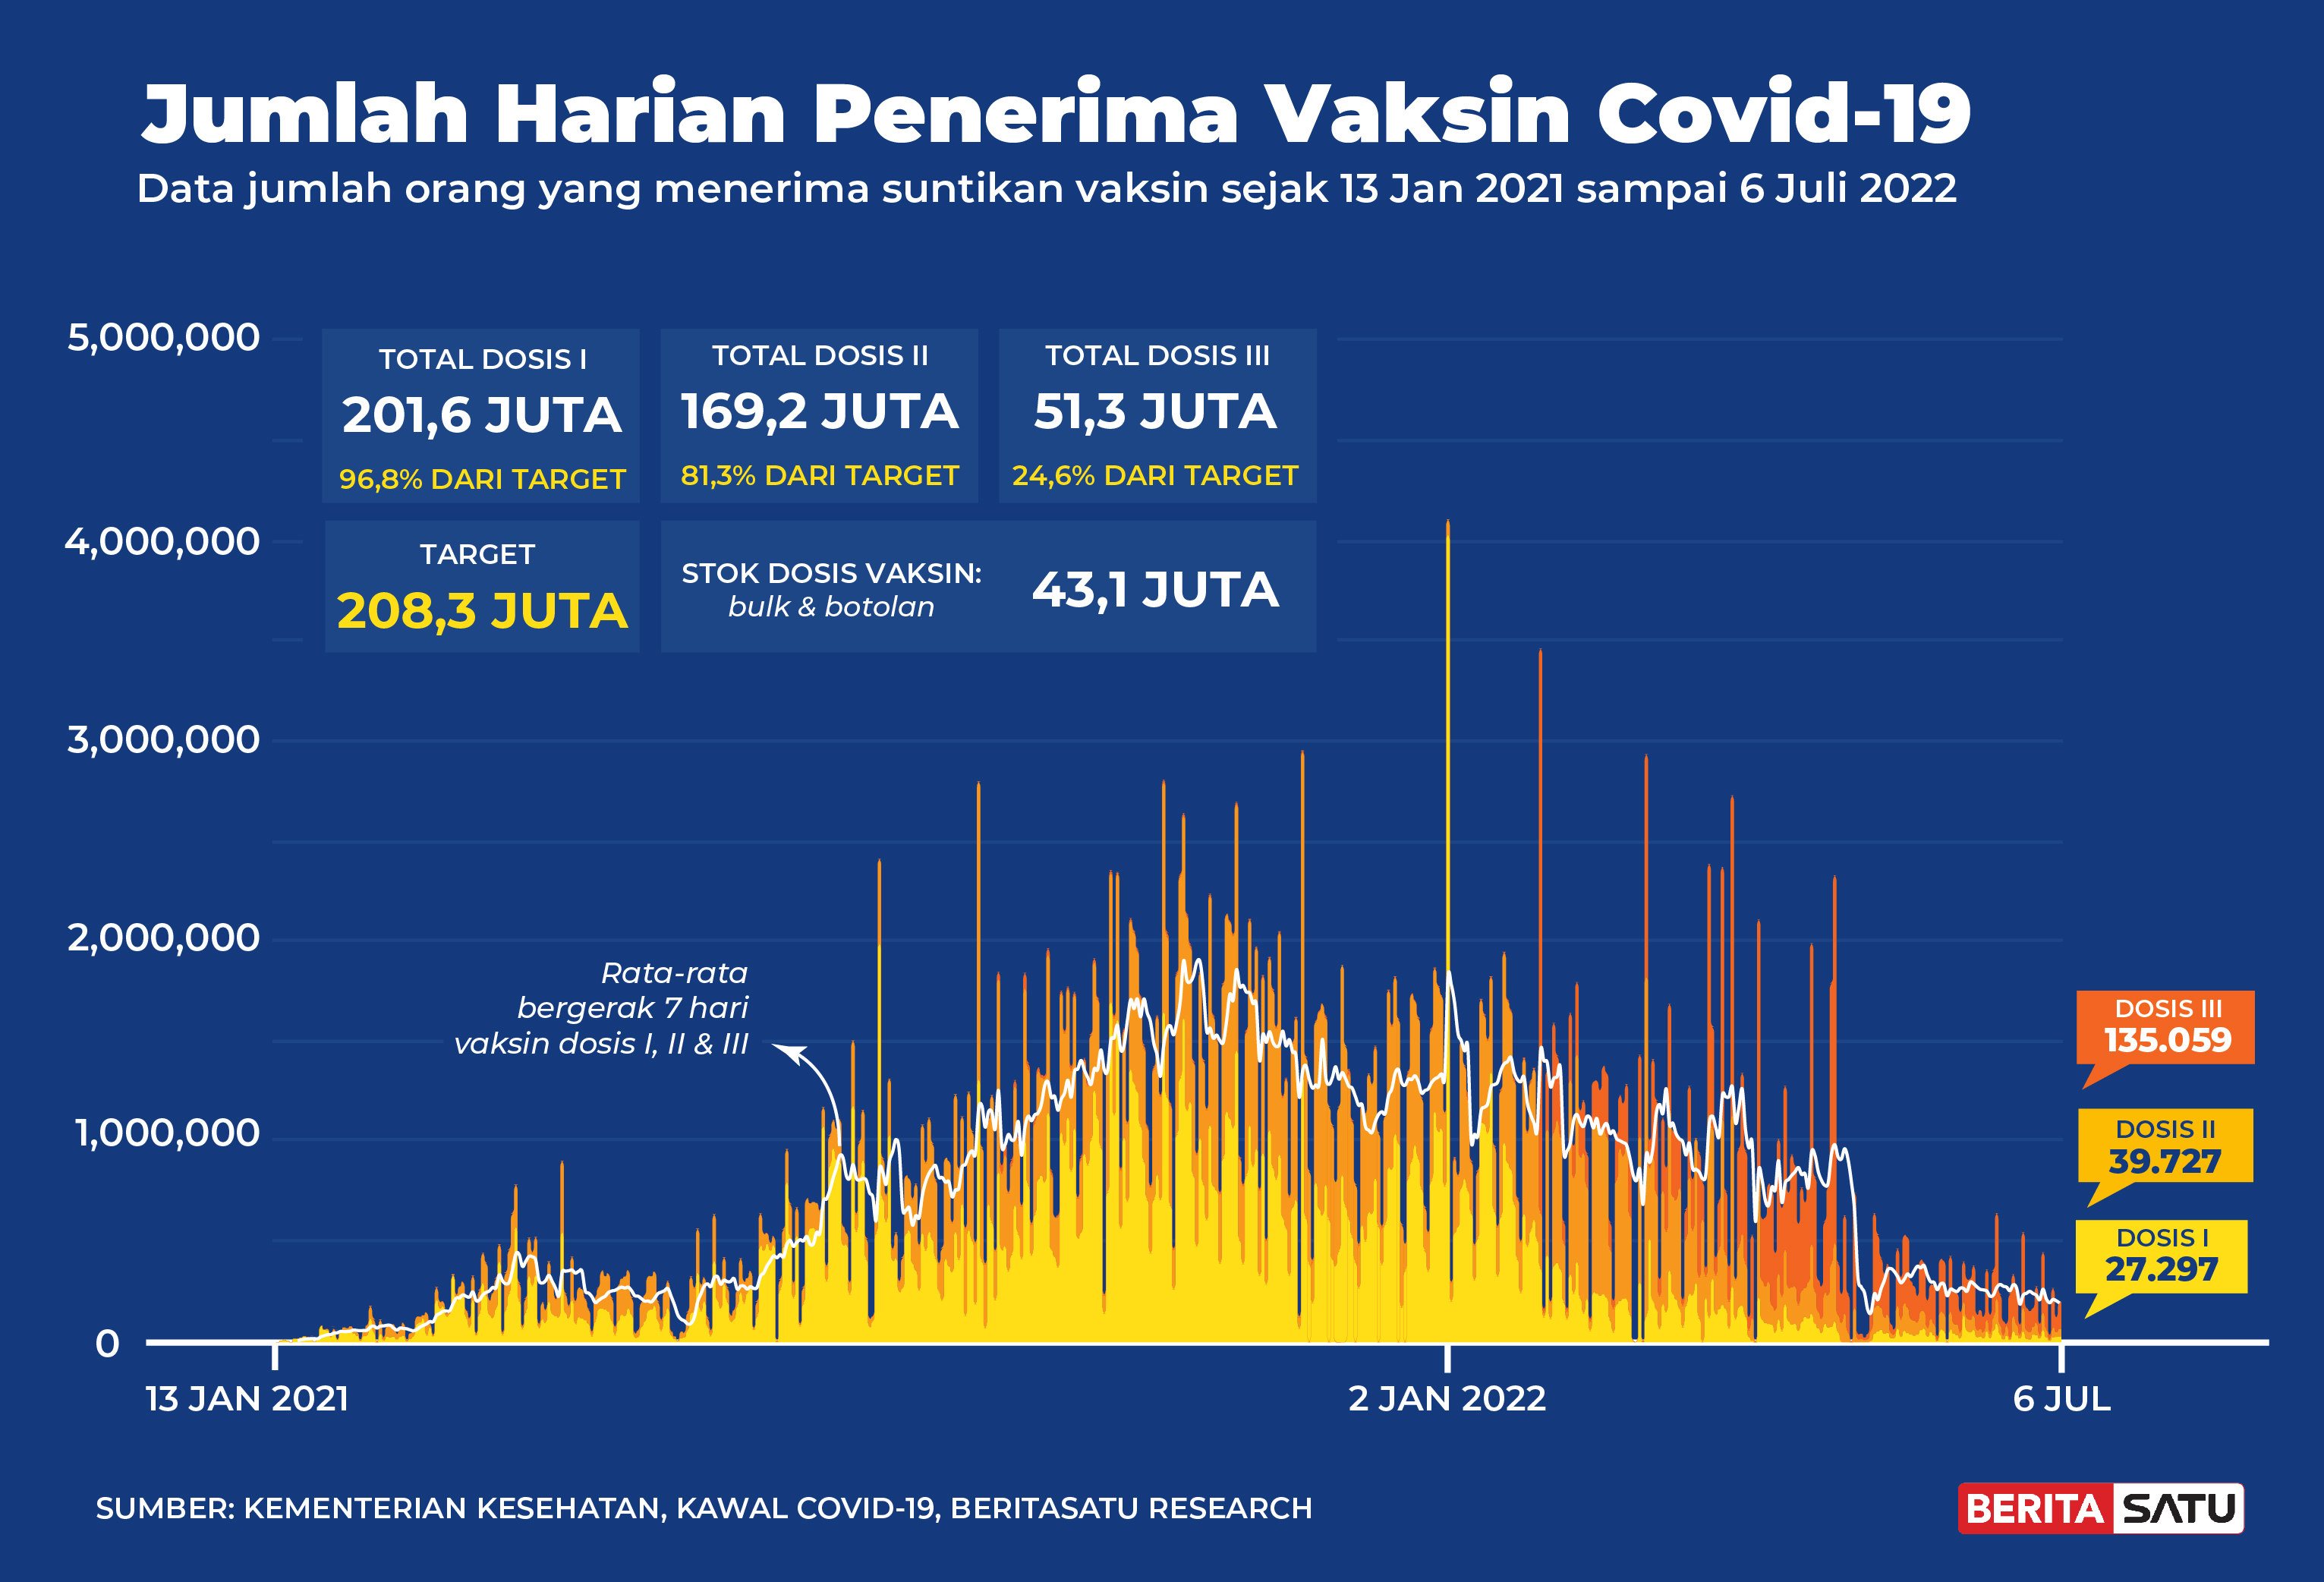 Penerima Vaksin Covid-19 di Indonesia sampai 6 Juli 2022